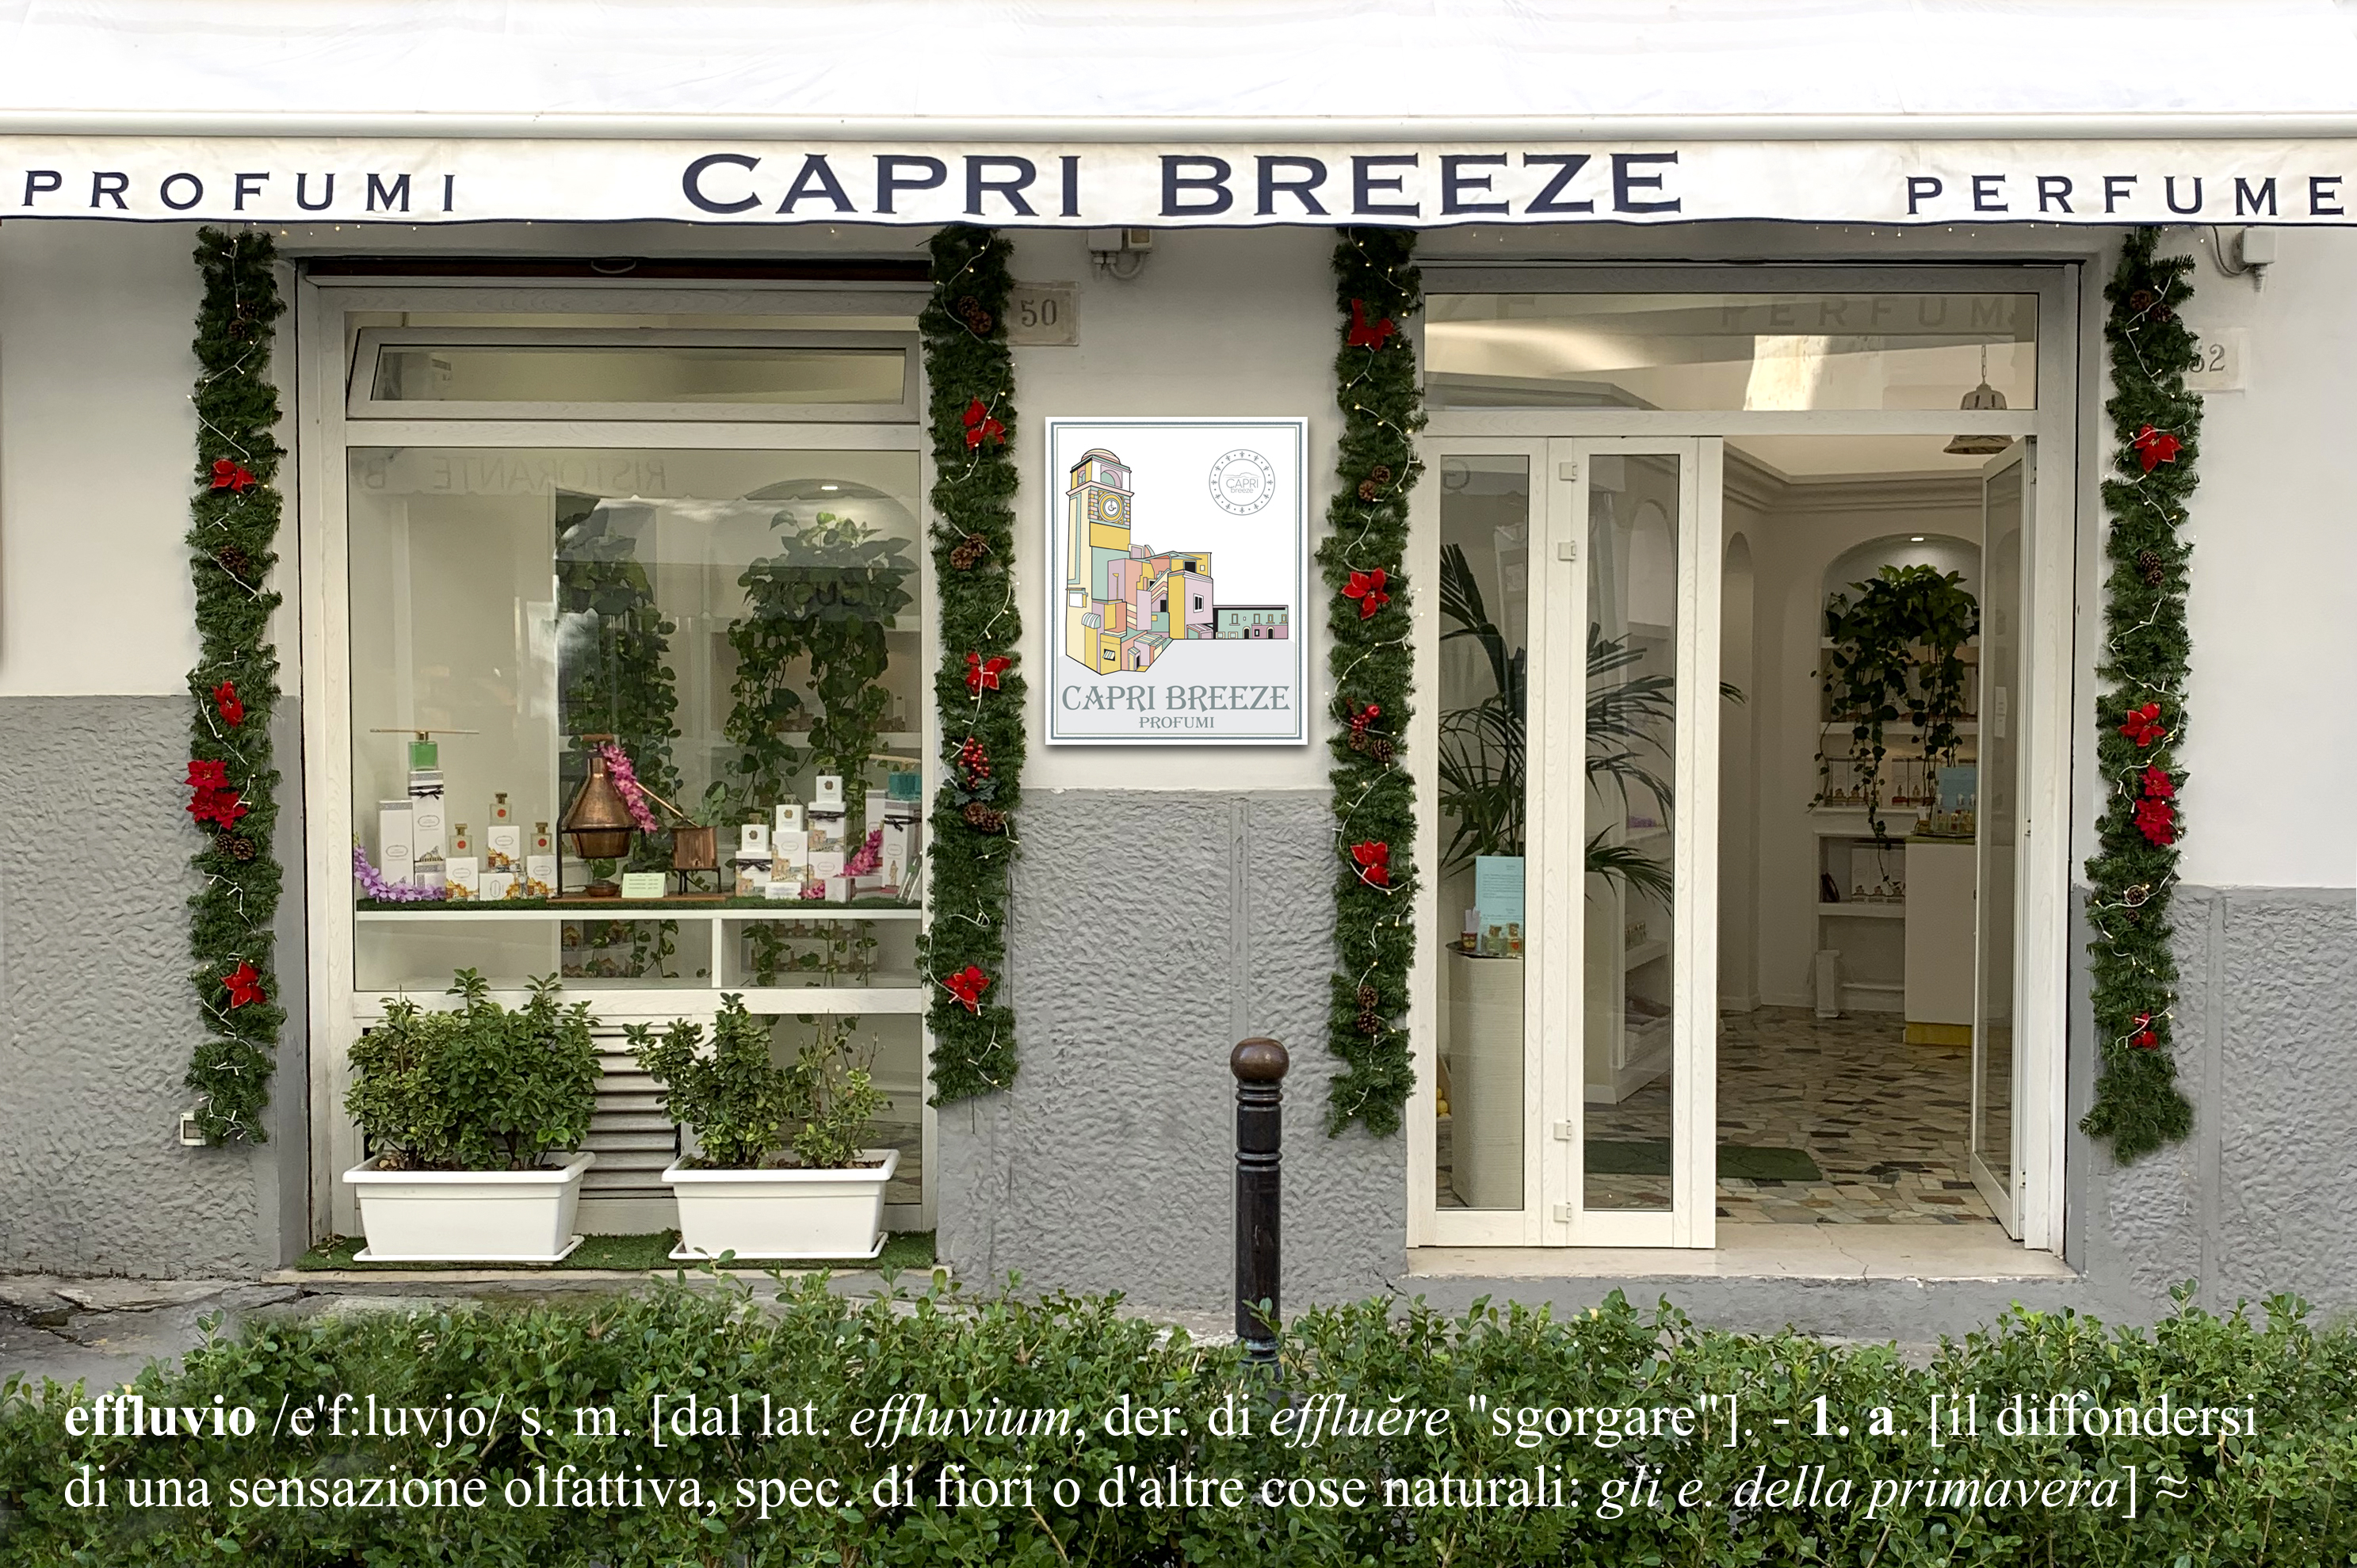 Capri breeze